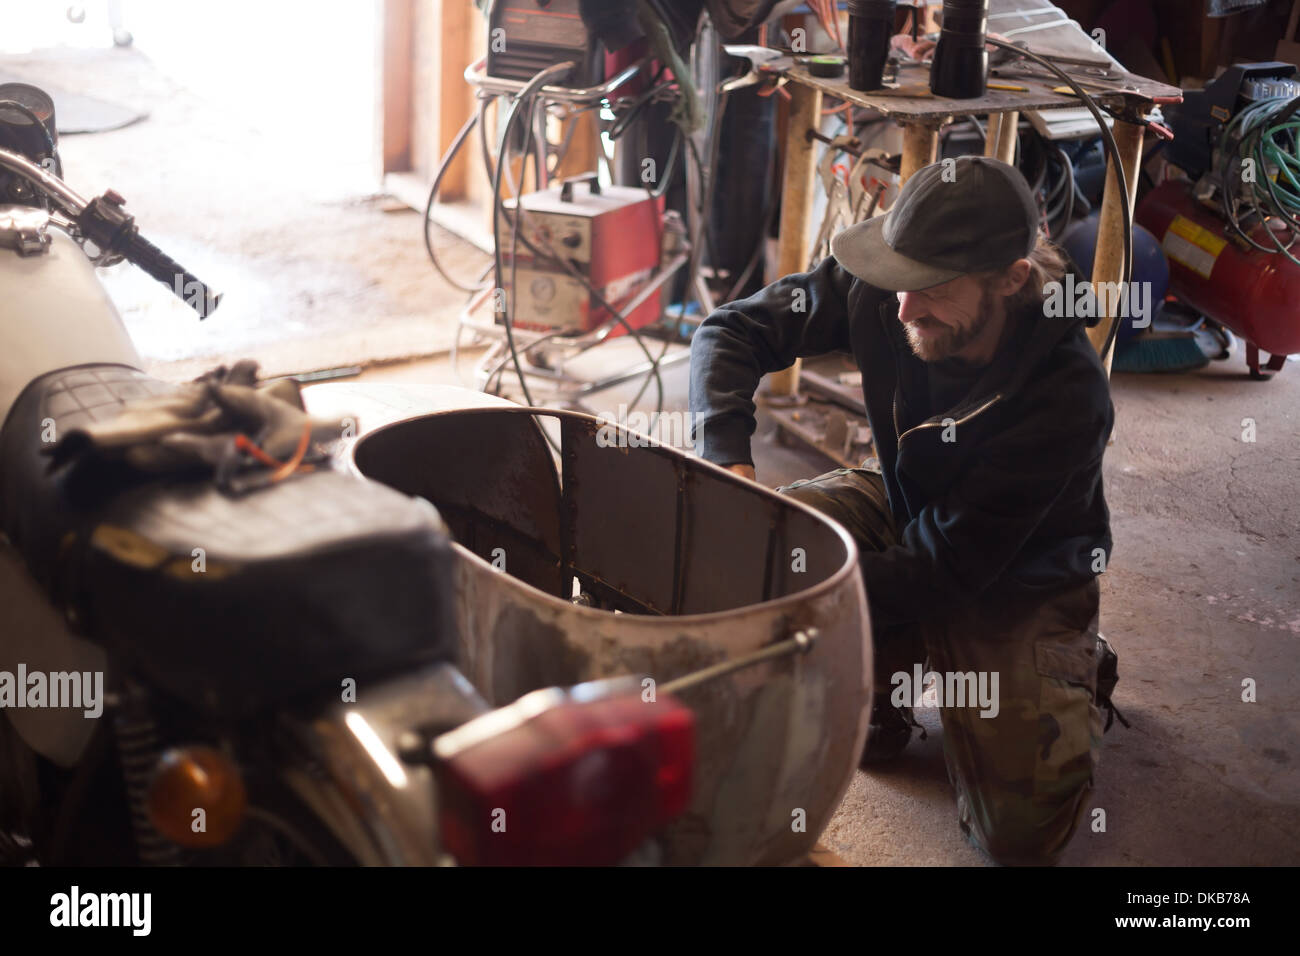 Un constructeur de machines et de metal dans son atelier Banque D'Images